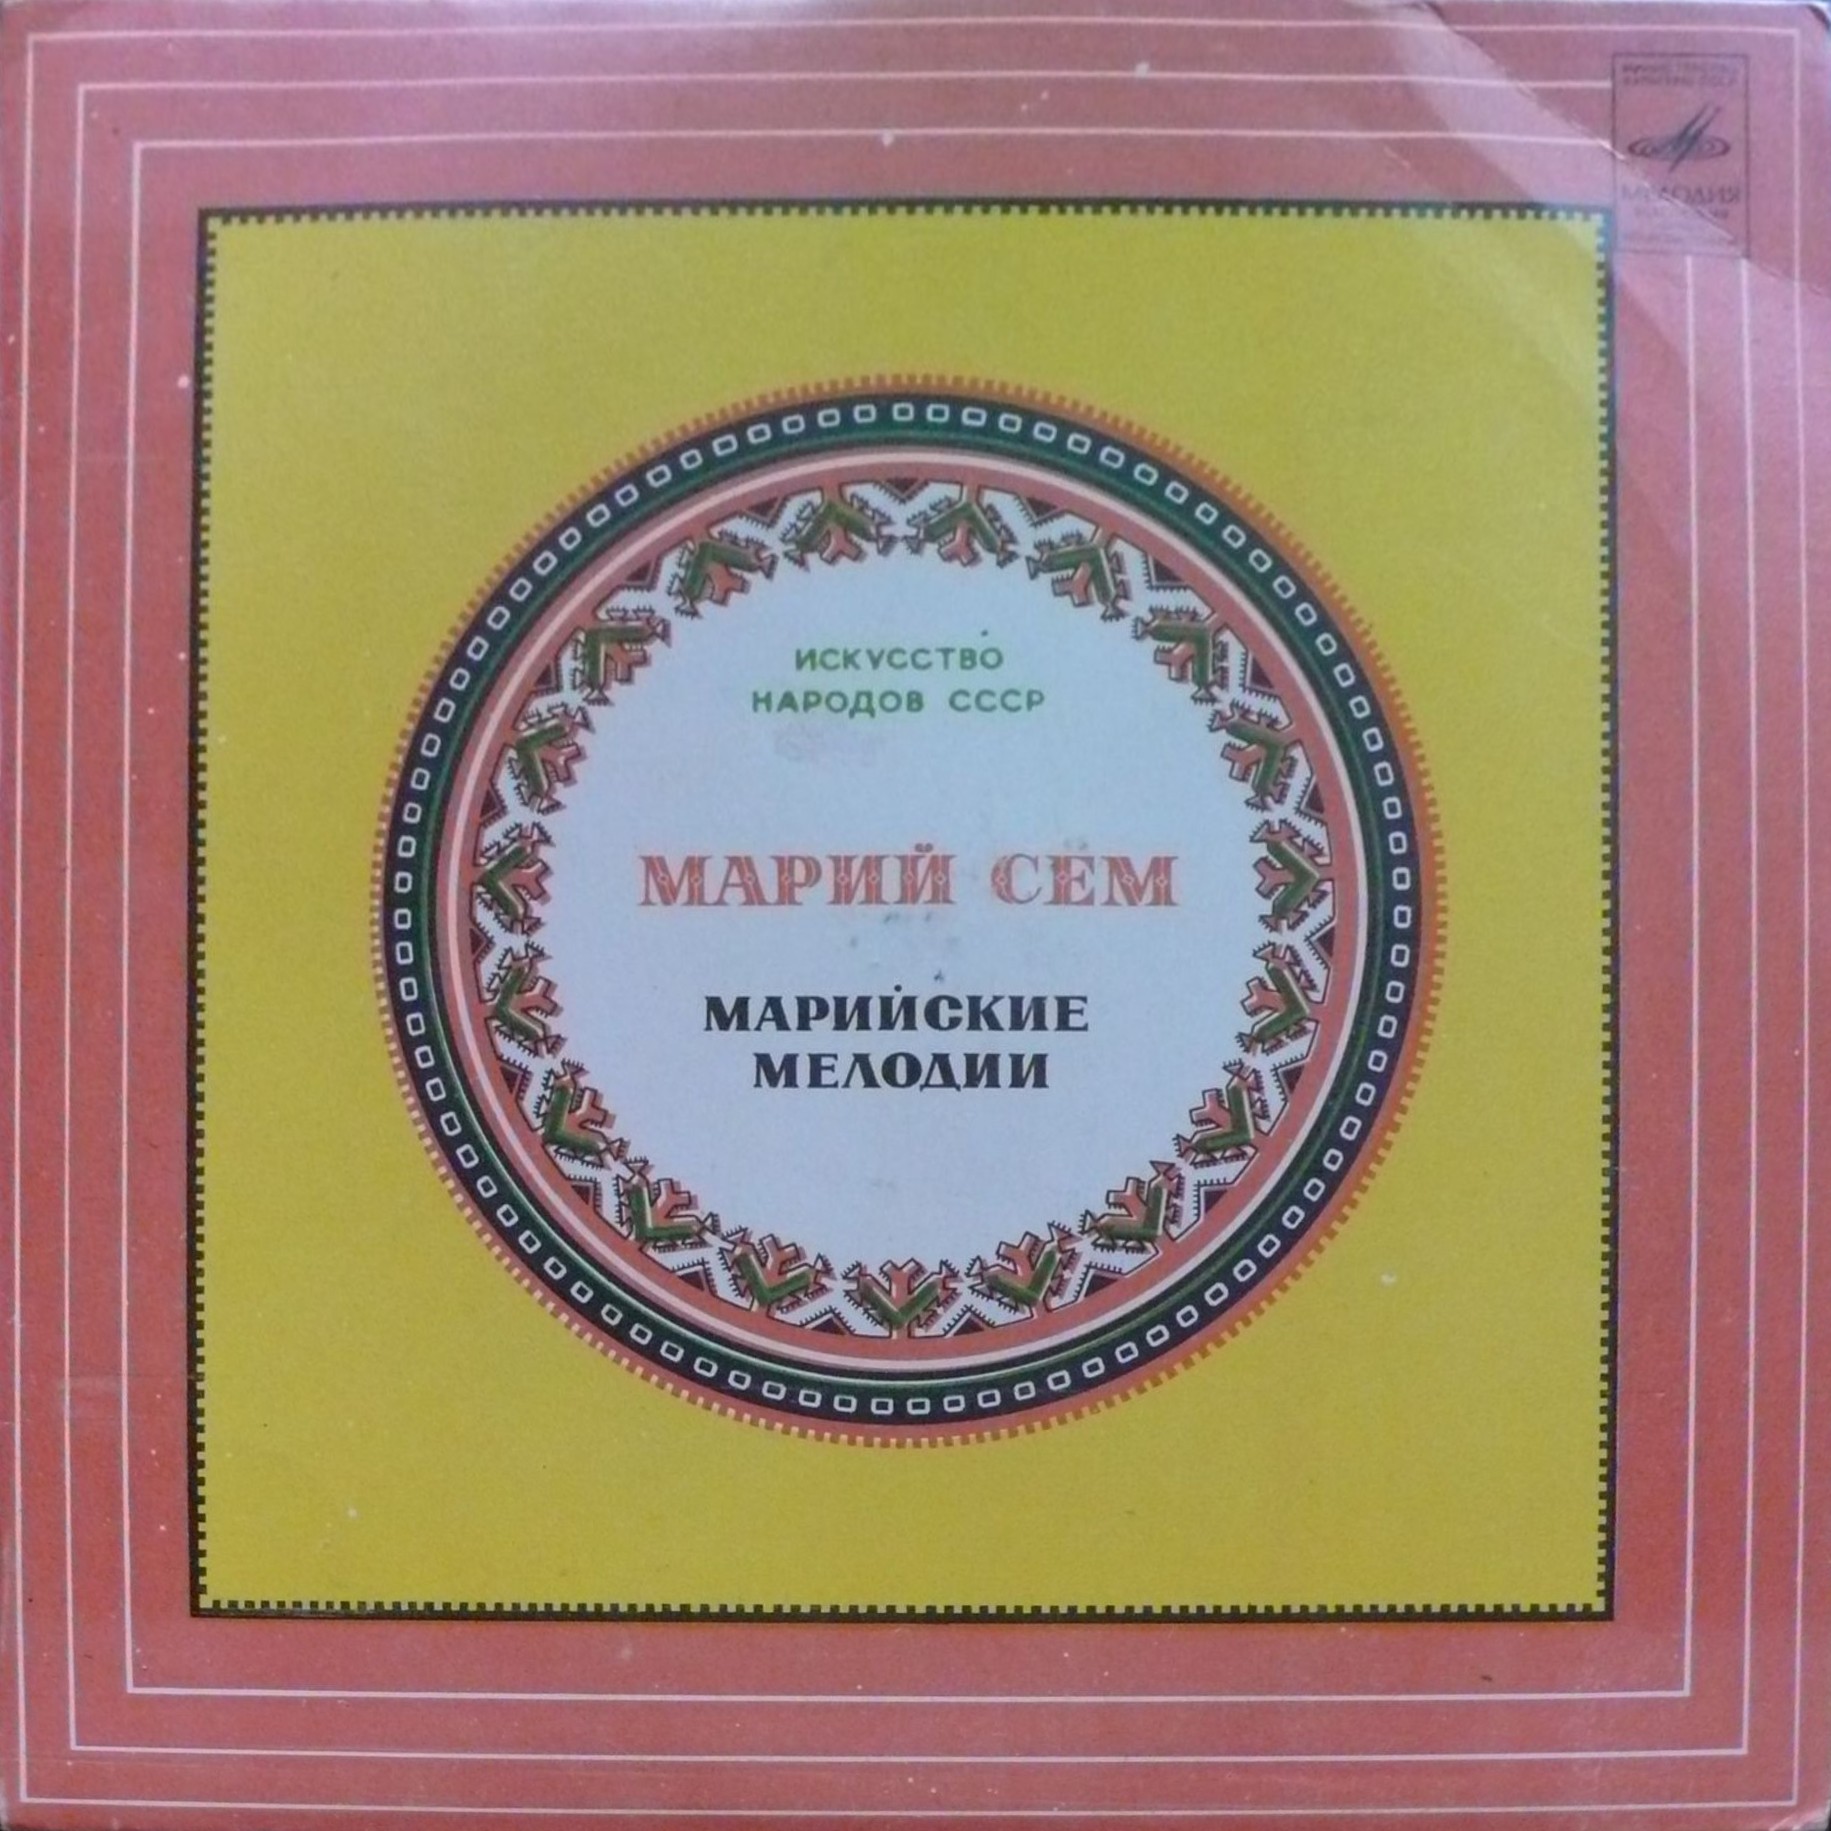 Романсы марийских композиторов